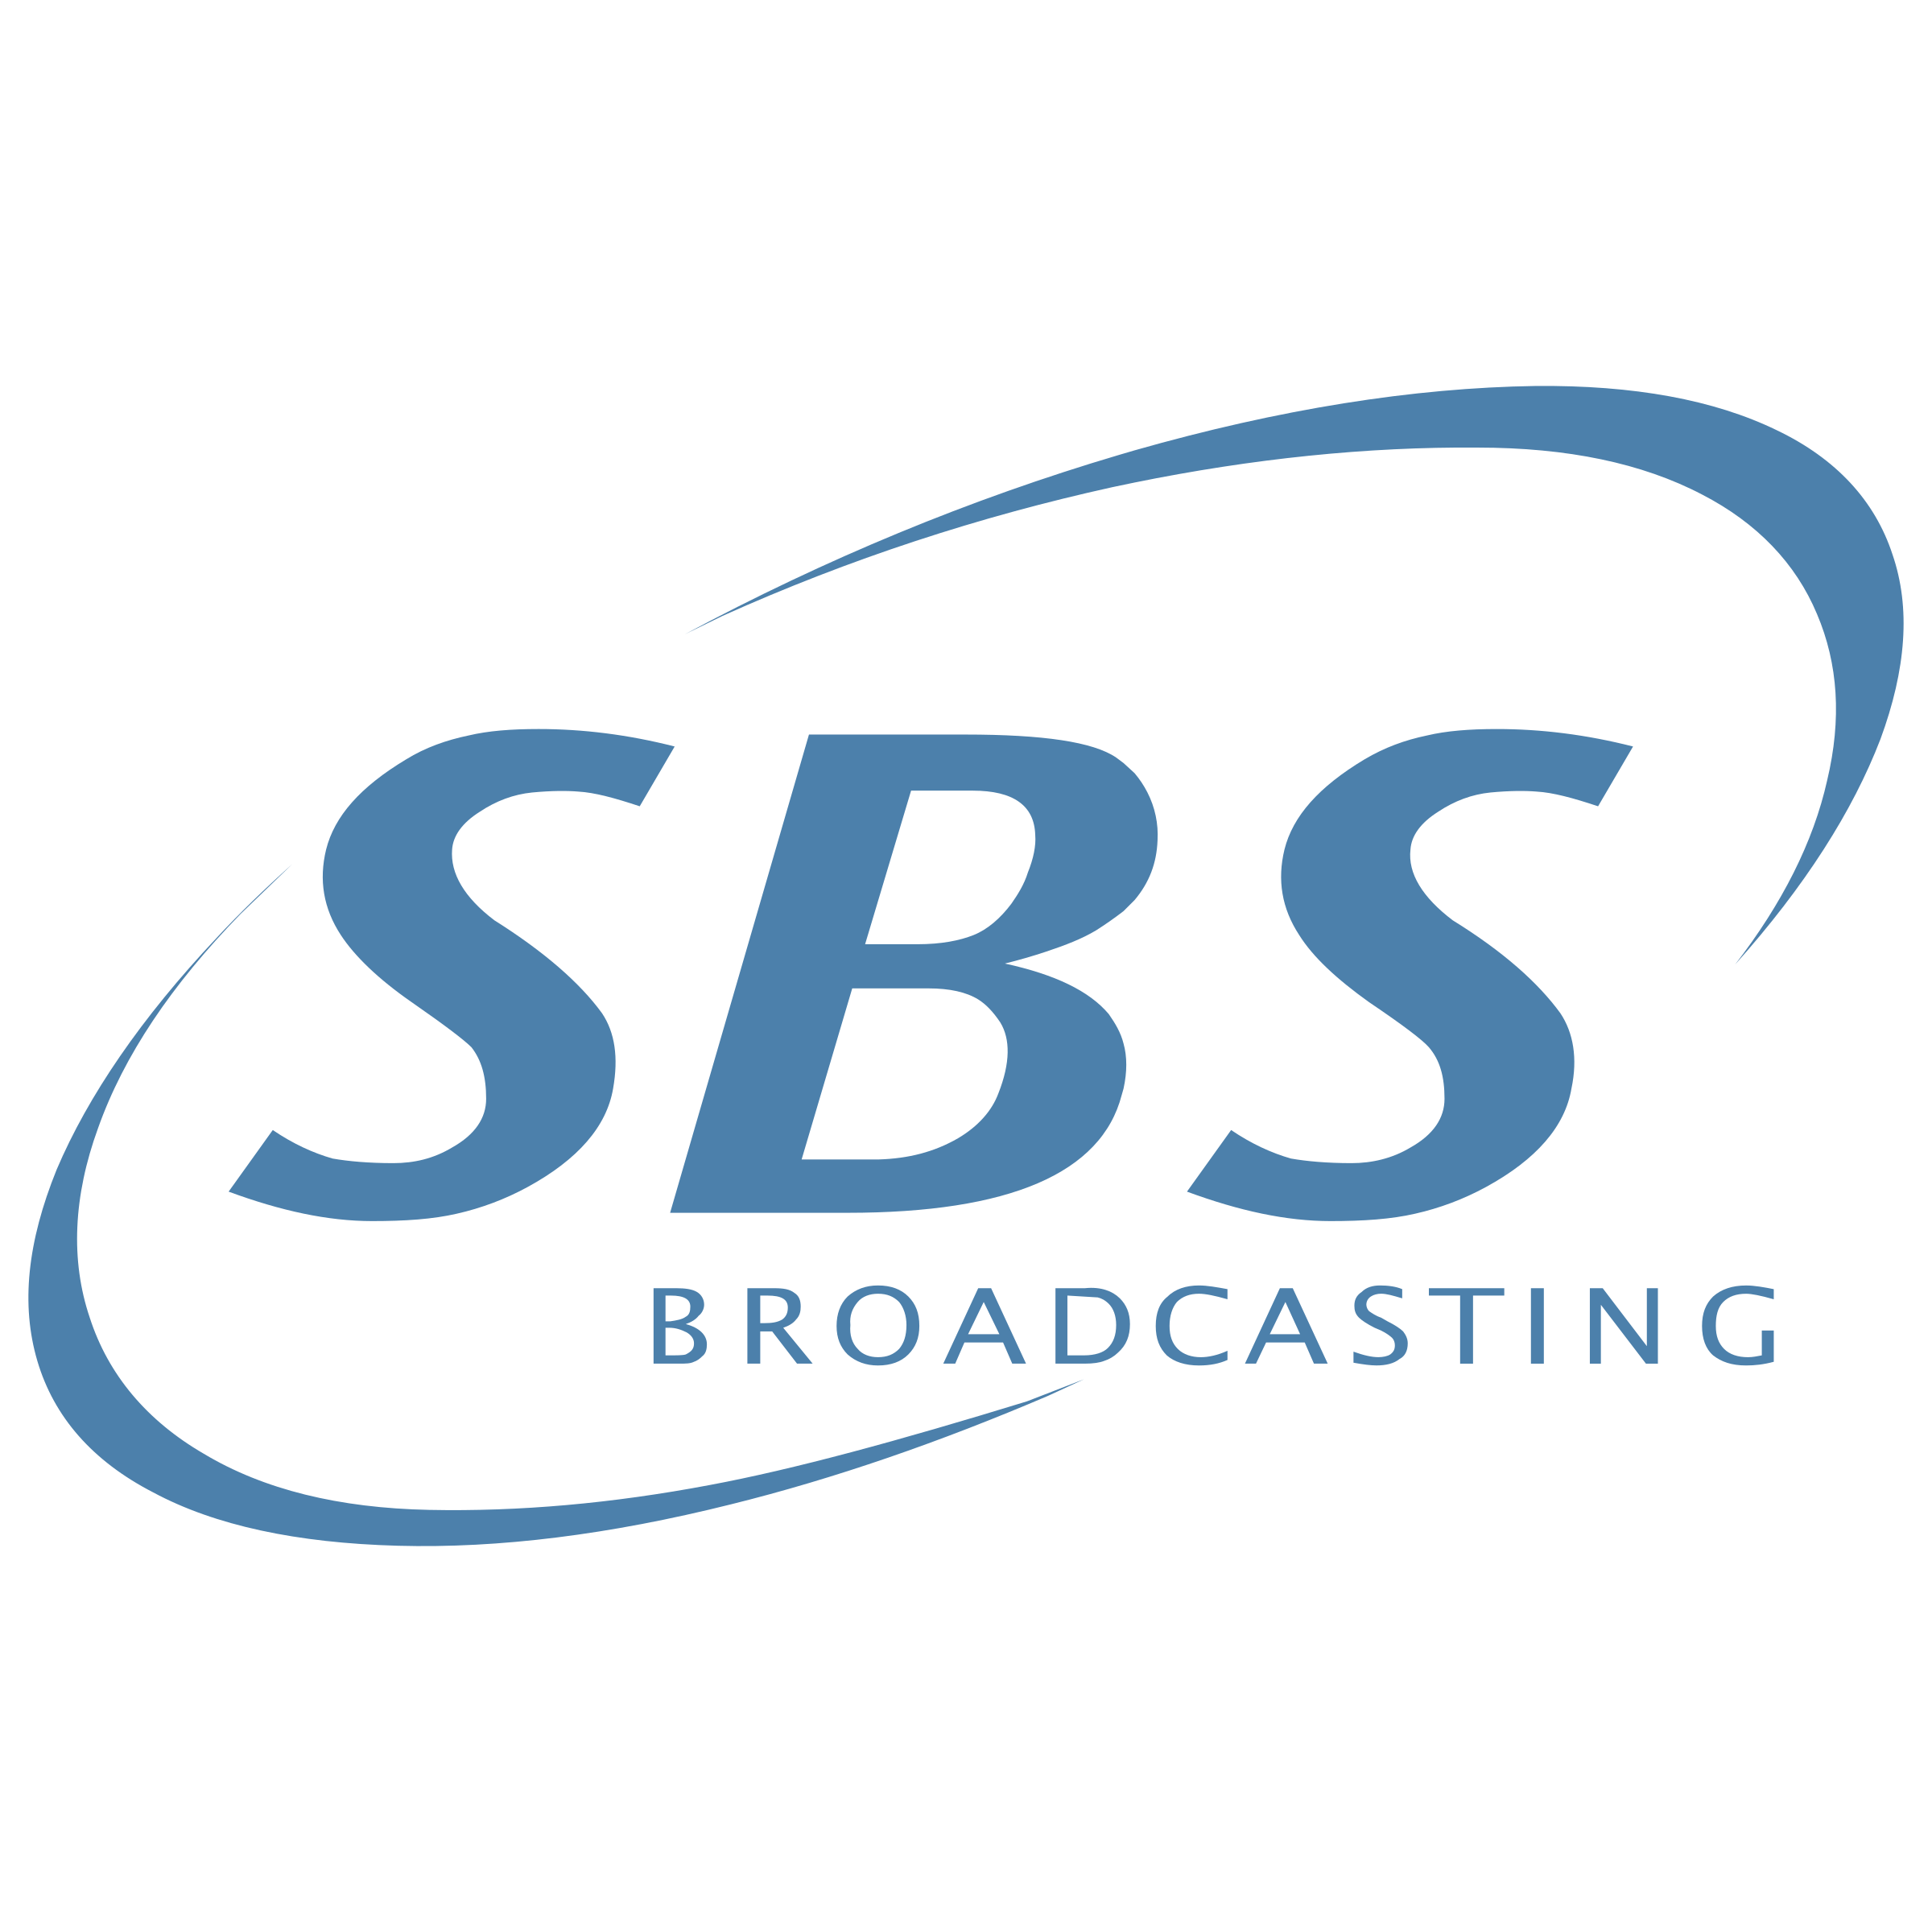 SBS Logo - SBS Broadcasting Logo PNG Transparent & SVG Vector - Freebie Supply